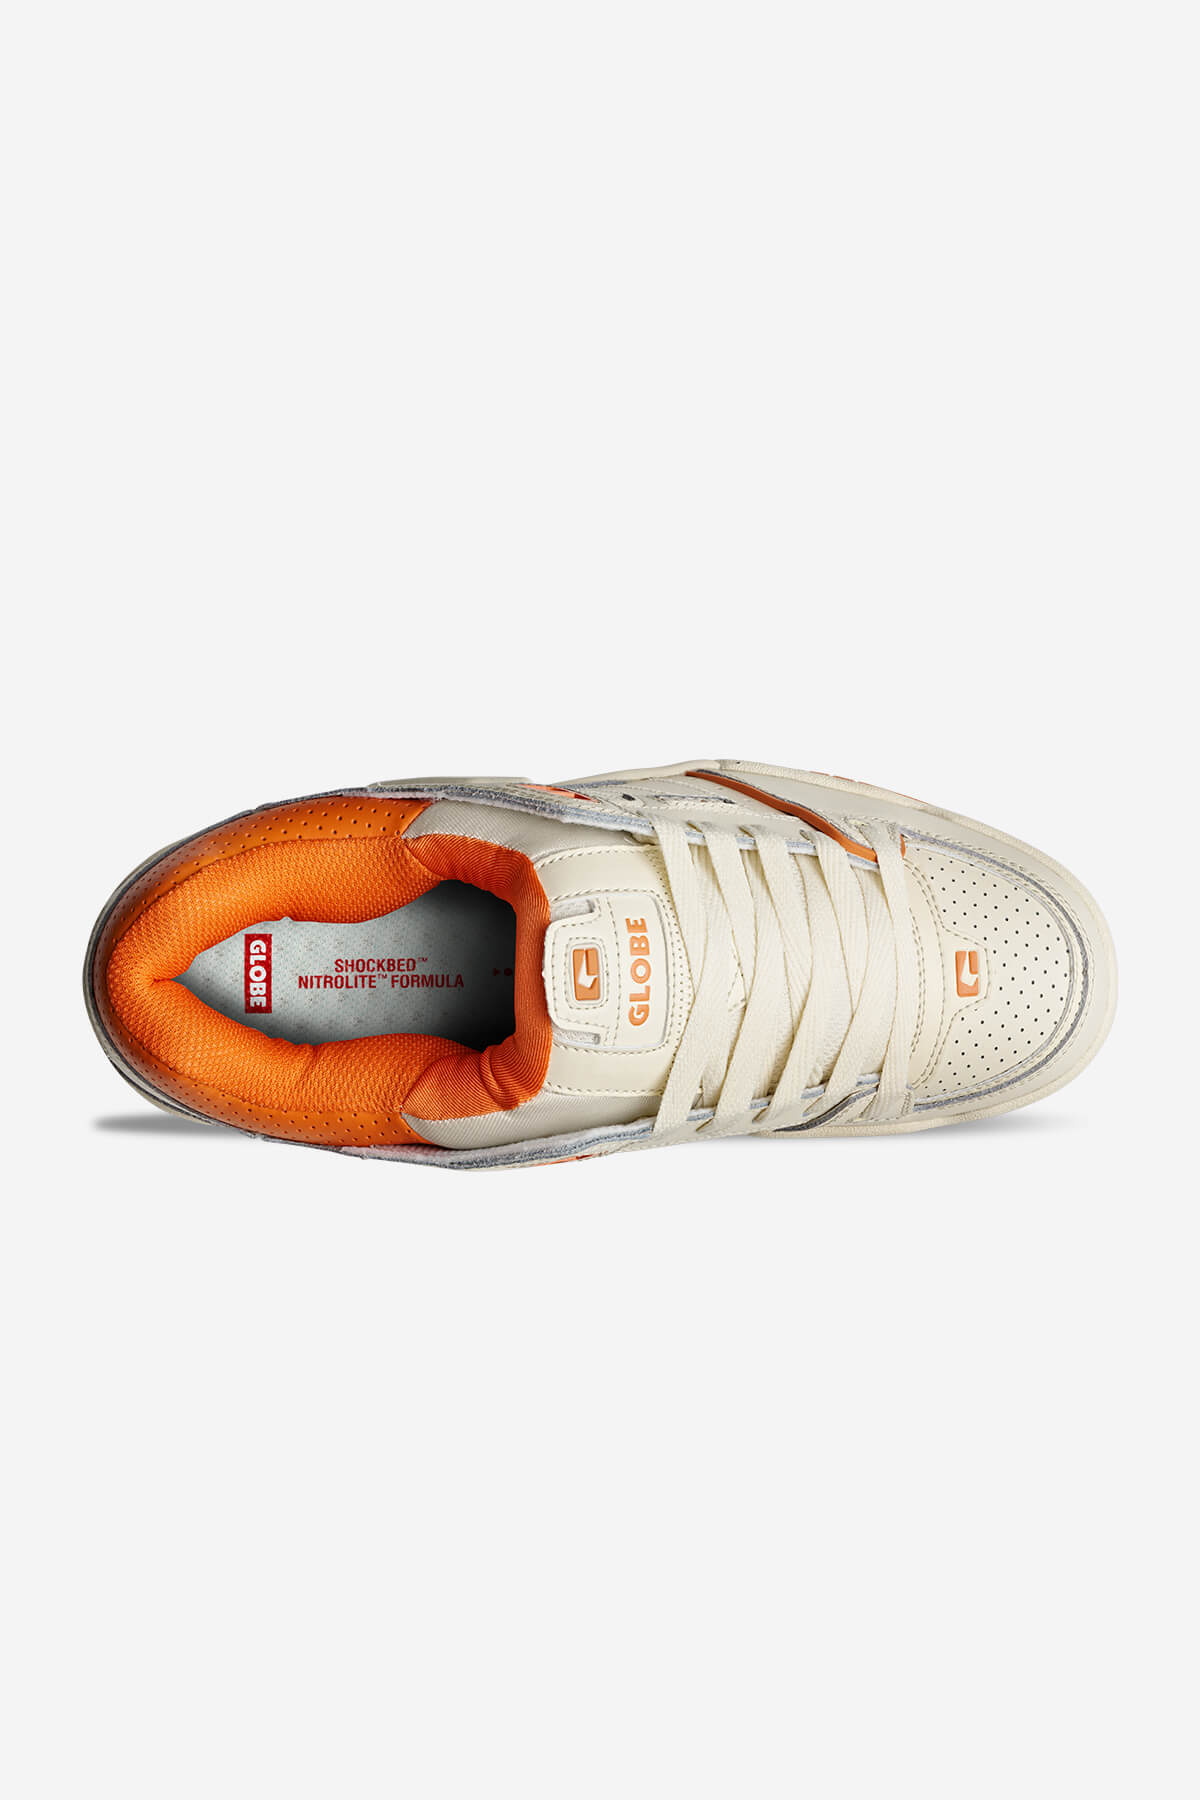 Globe Low shoes Fusion - Antique/Orange in Antique/Orange